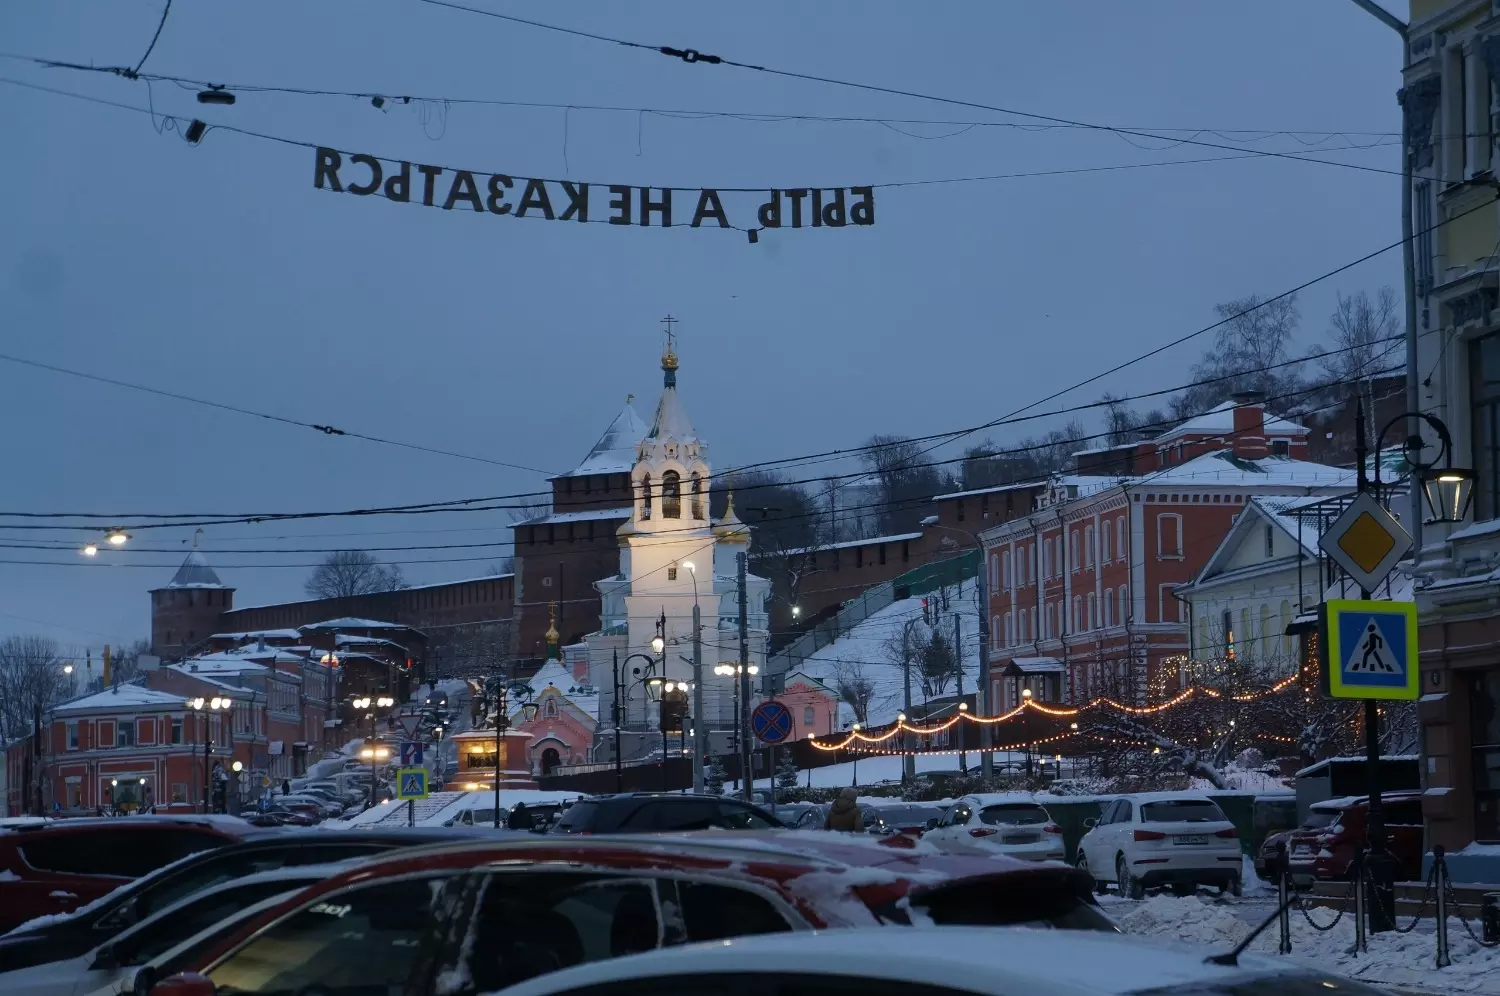 Рождественская улица в Нижнем Новгороде